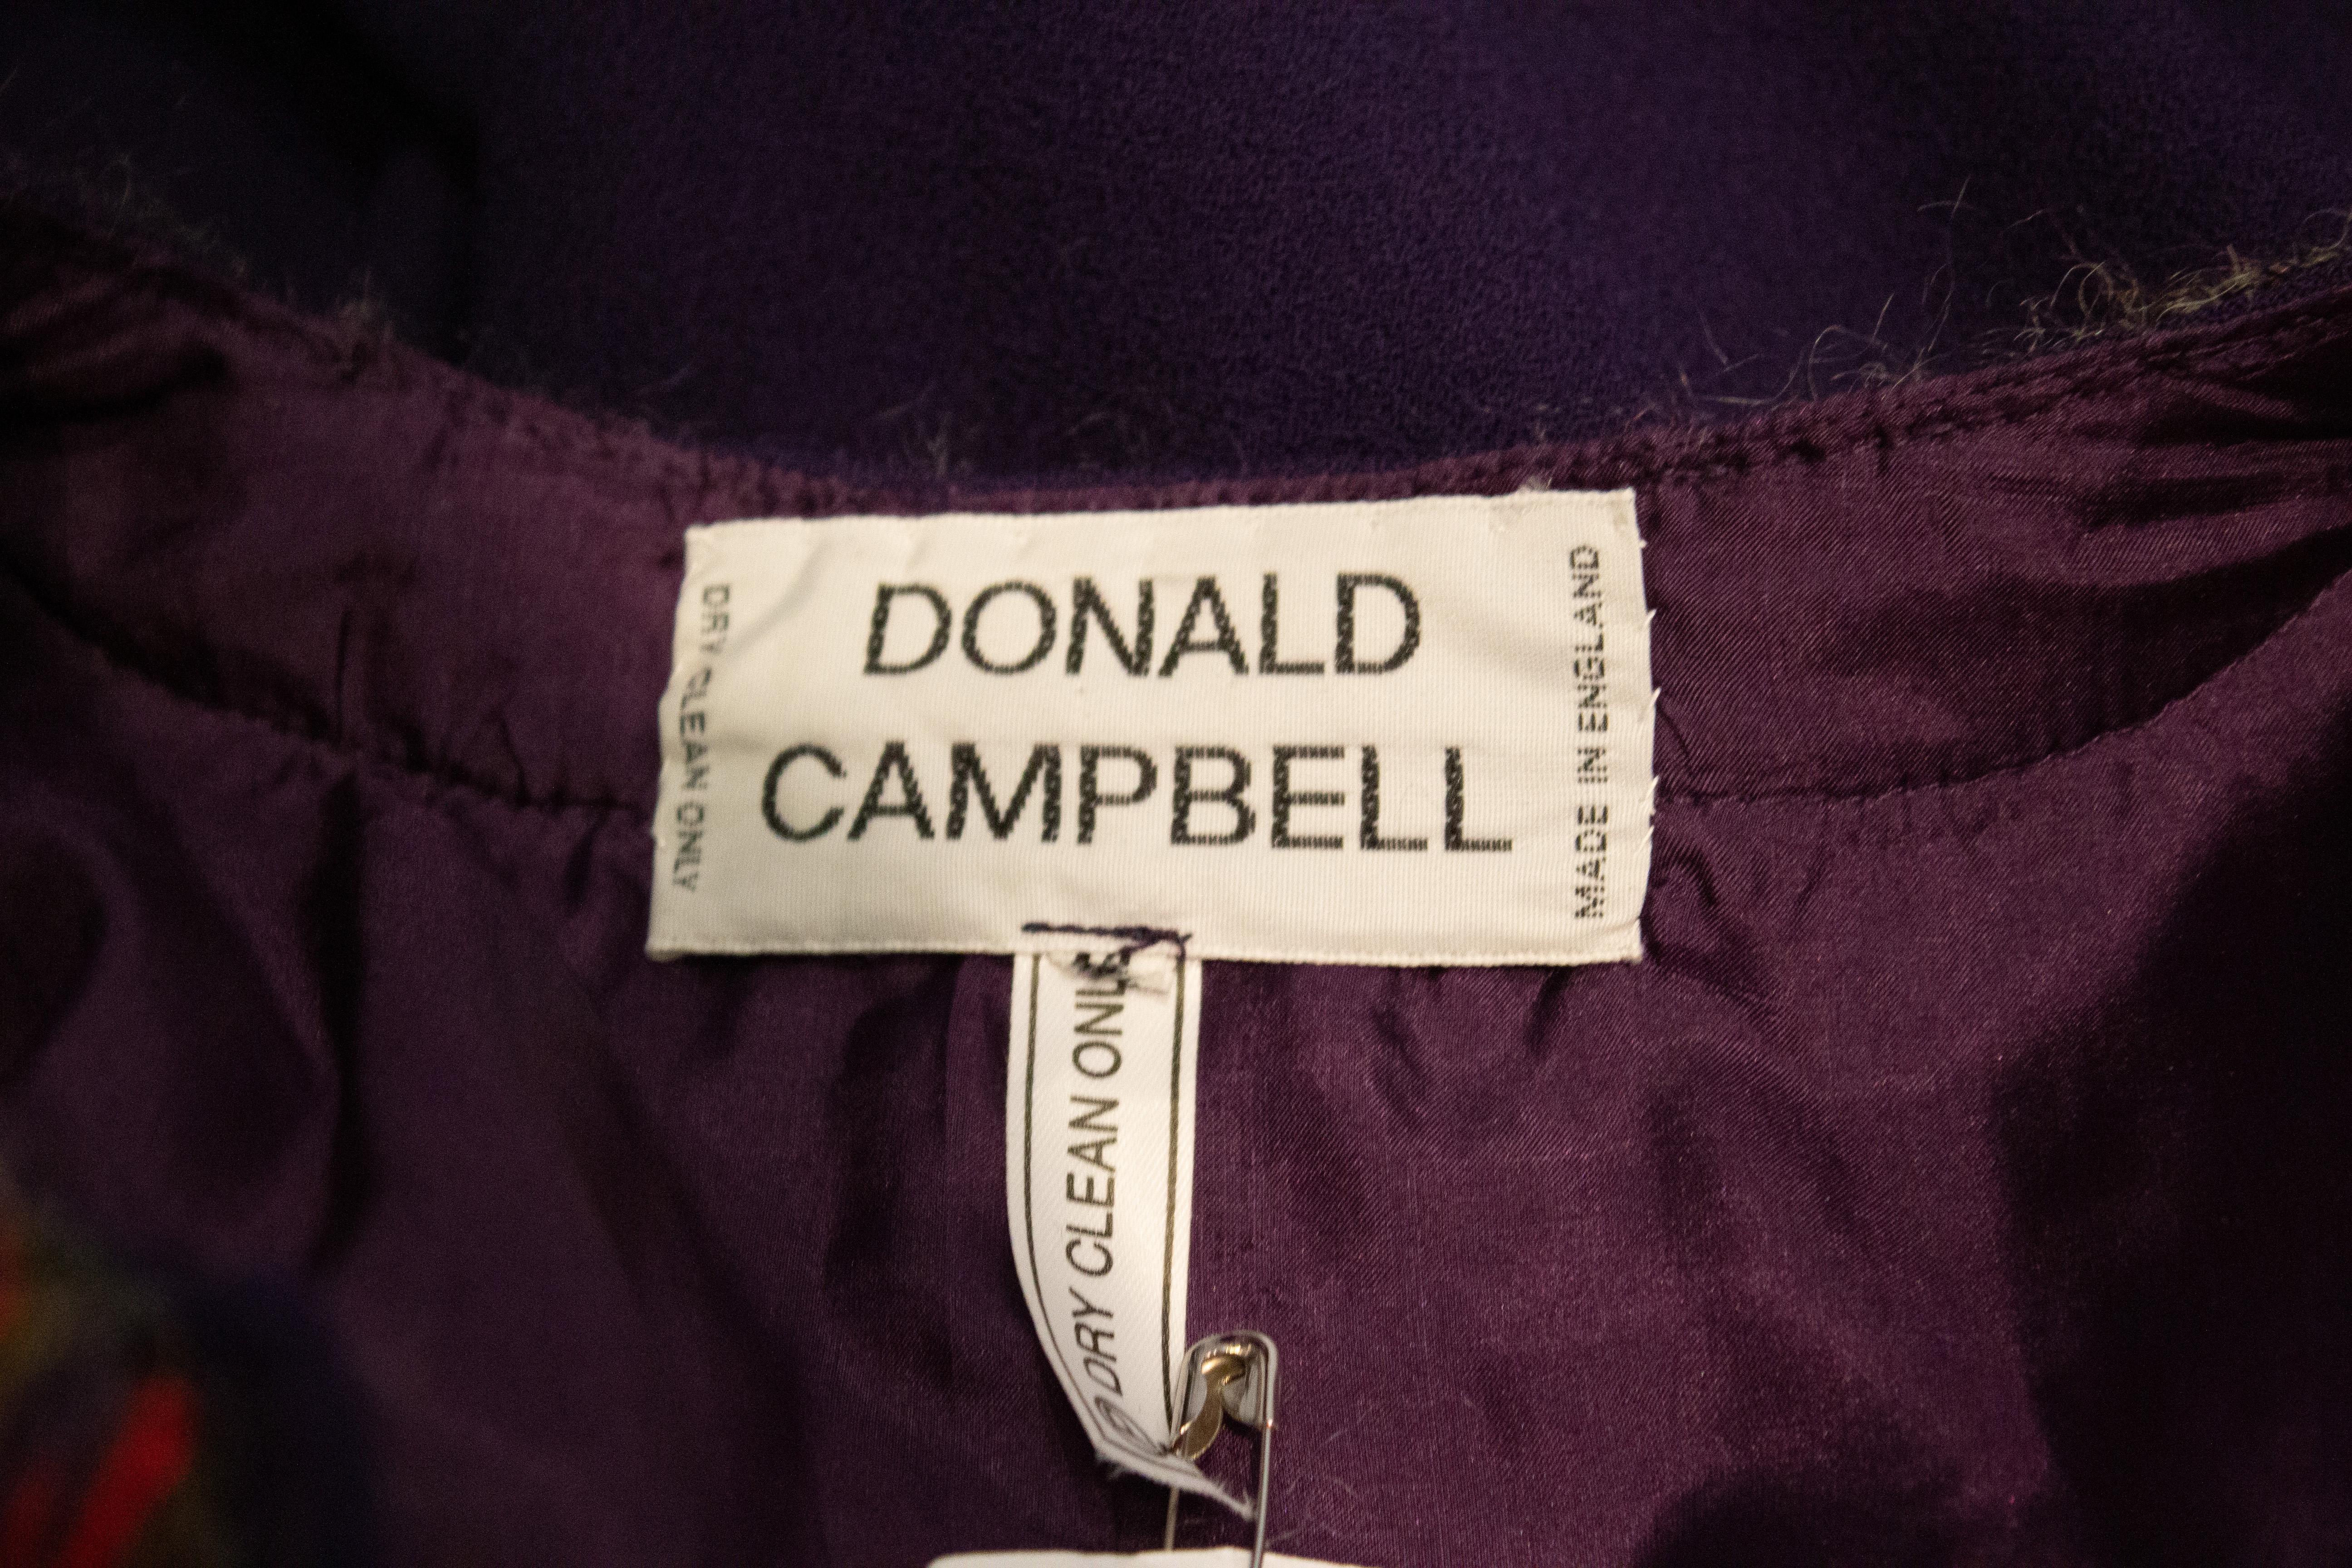 Ein schickes Kleid für den Herbst von Donald Campbell. Das Kleid ist aus lilafarbenem Wollkrepp (Crêpe de Paris) mit rosa, grauen und lilafarbenen Borten. Der obere Bereich ist vollständig gefüttert.
Maße: Büste bis zu 42'' Länge 50''
